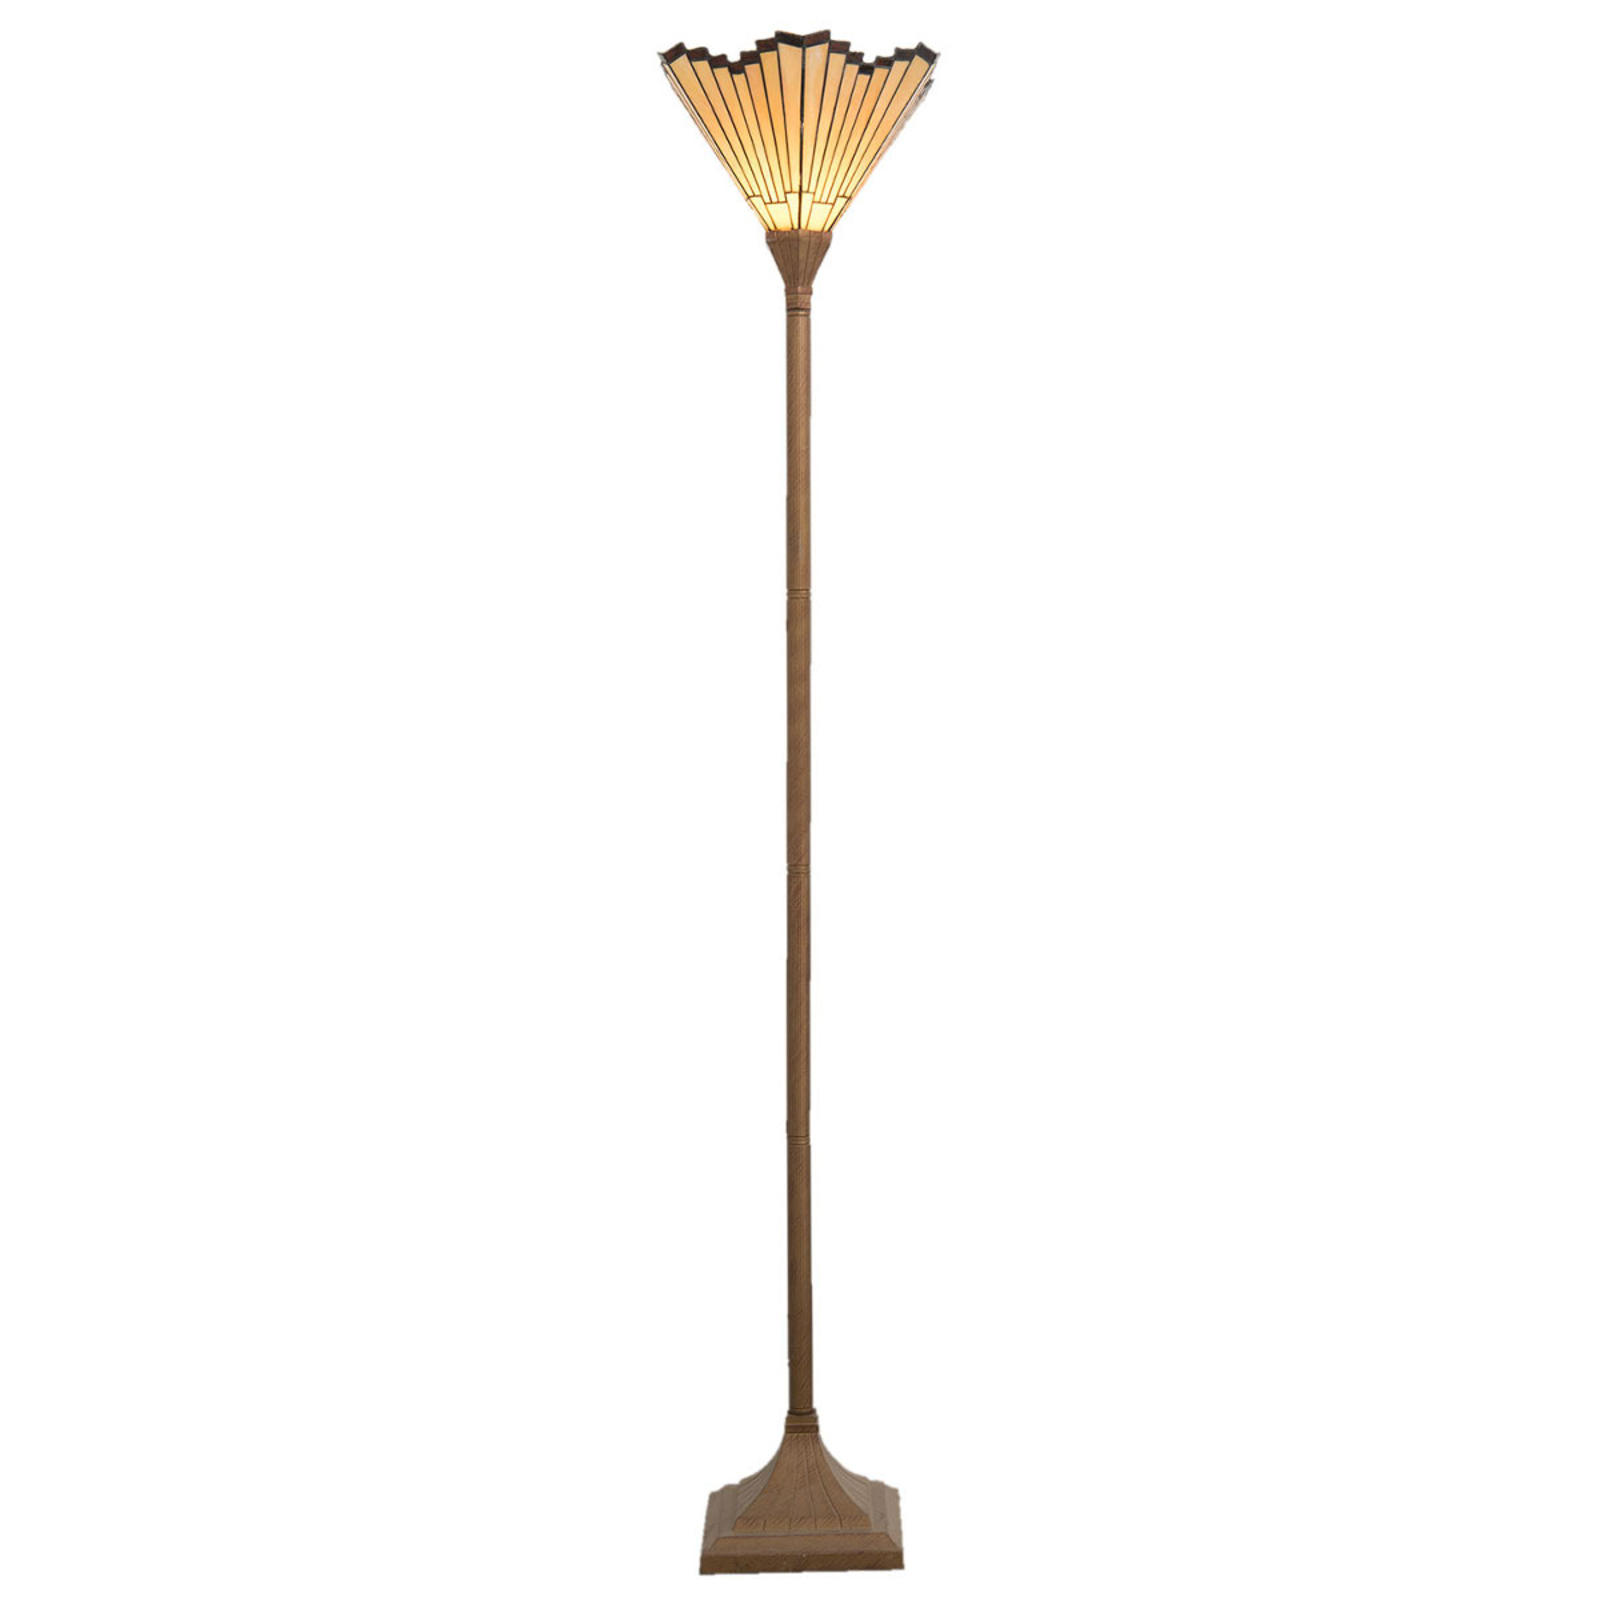 Voorkomen Goodwill Dekking Marla - staande lamp in Tiffany-stijl | Lampen24.nl